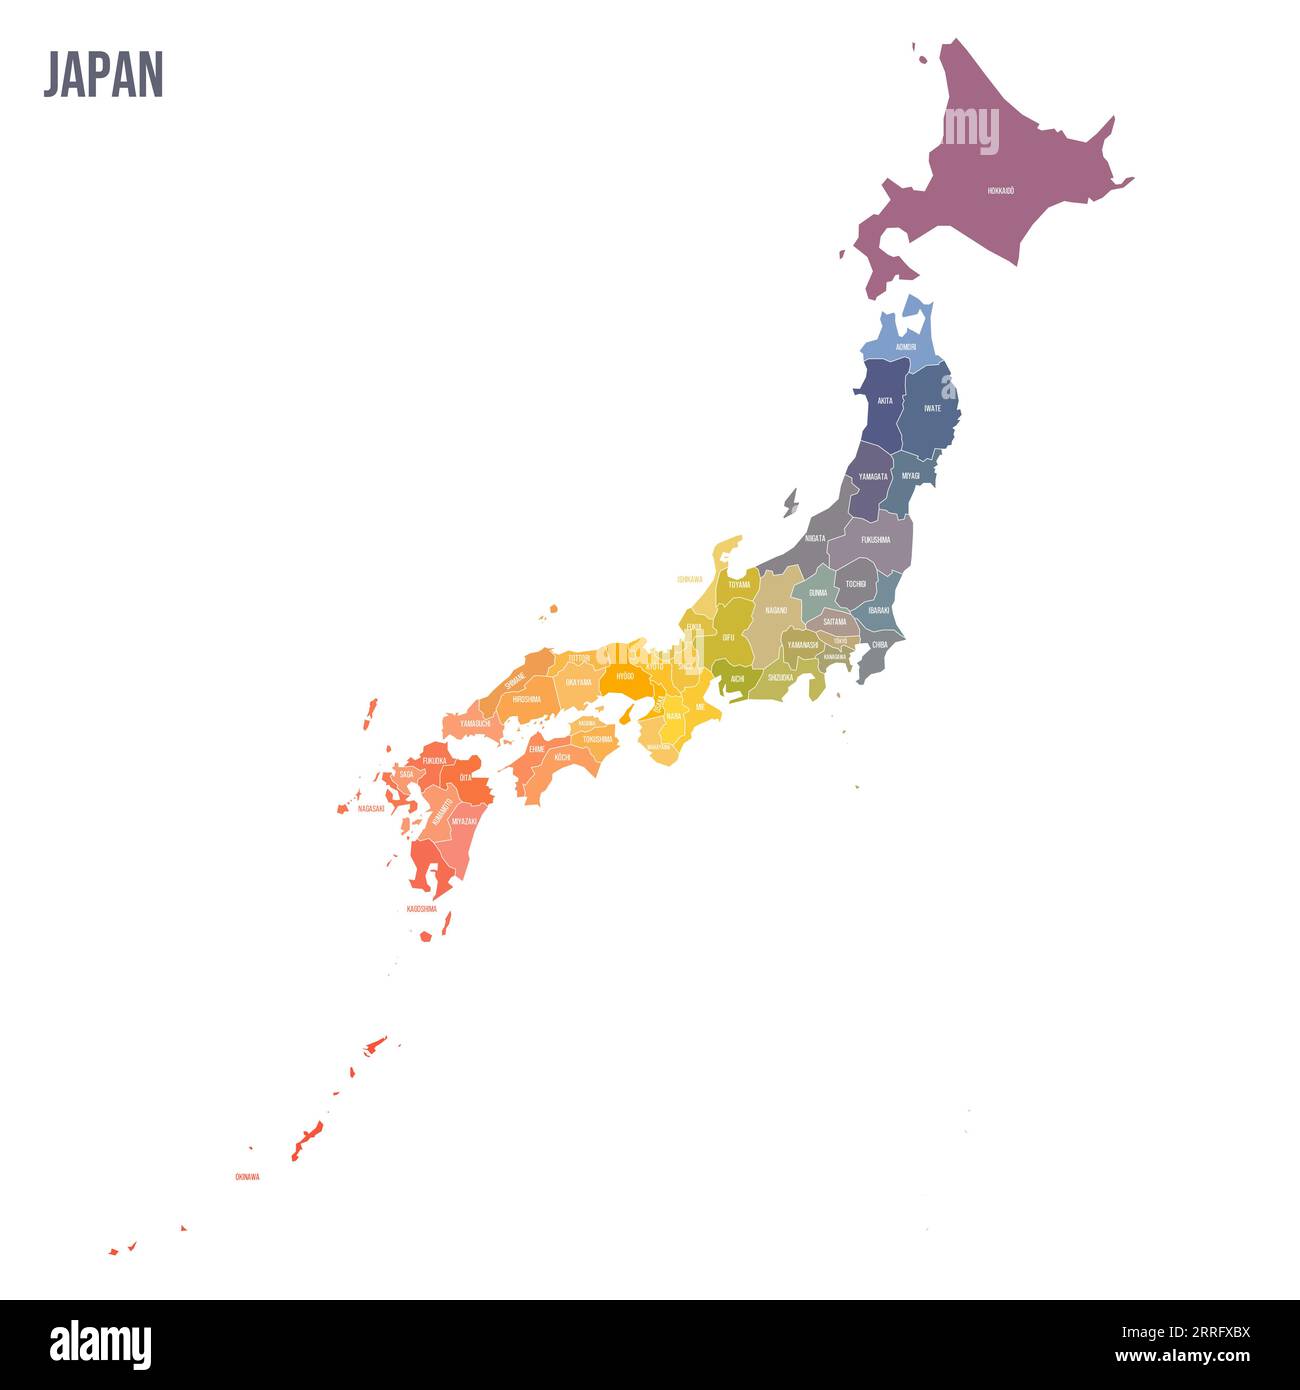 Politische Karte Japans der Verwaltungsbezirke – Präfekturen, Metropilis Tokio, Territorium Hokaido und städtische Präfekturen Kyoto und Osaka. Bunte Spektrumkarte mit Etiketten und Ländernamen. Stock Vektor